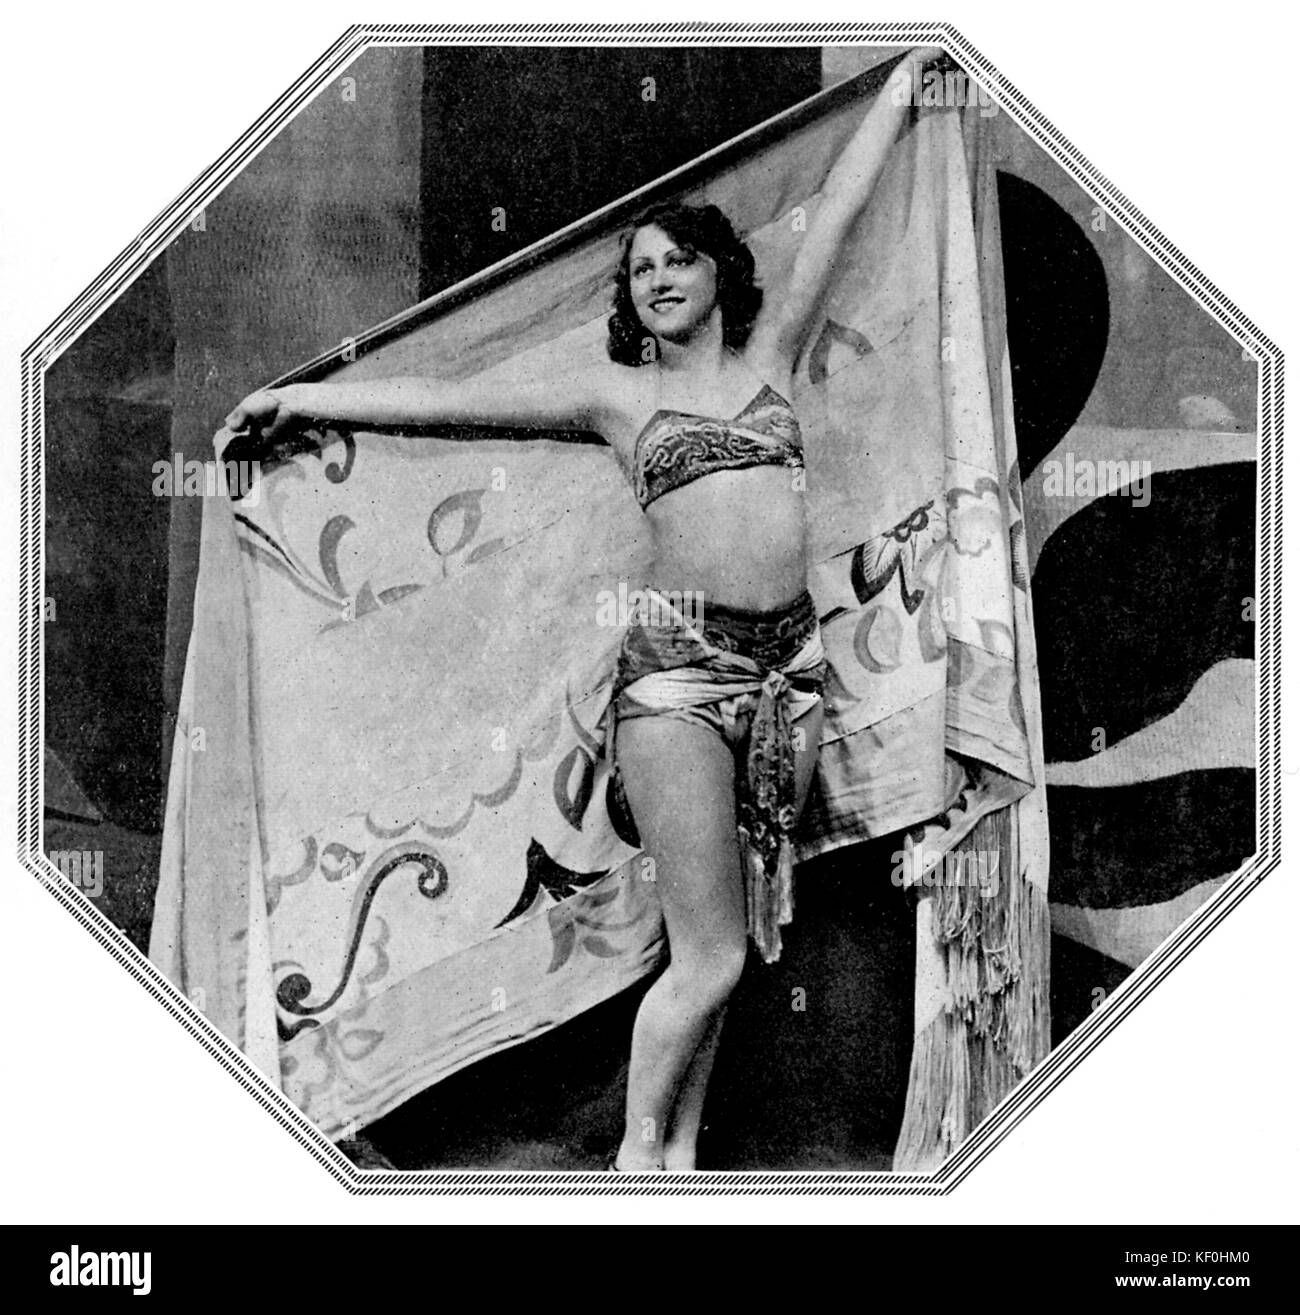 Tamara Desni come ballerina gitana in "Casanova" at The London Coliseum, 24 maggio 1932. Td. (22 Ottobre 1911 - 7 febbraio 2008). Foto Stock